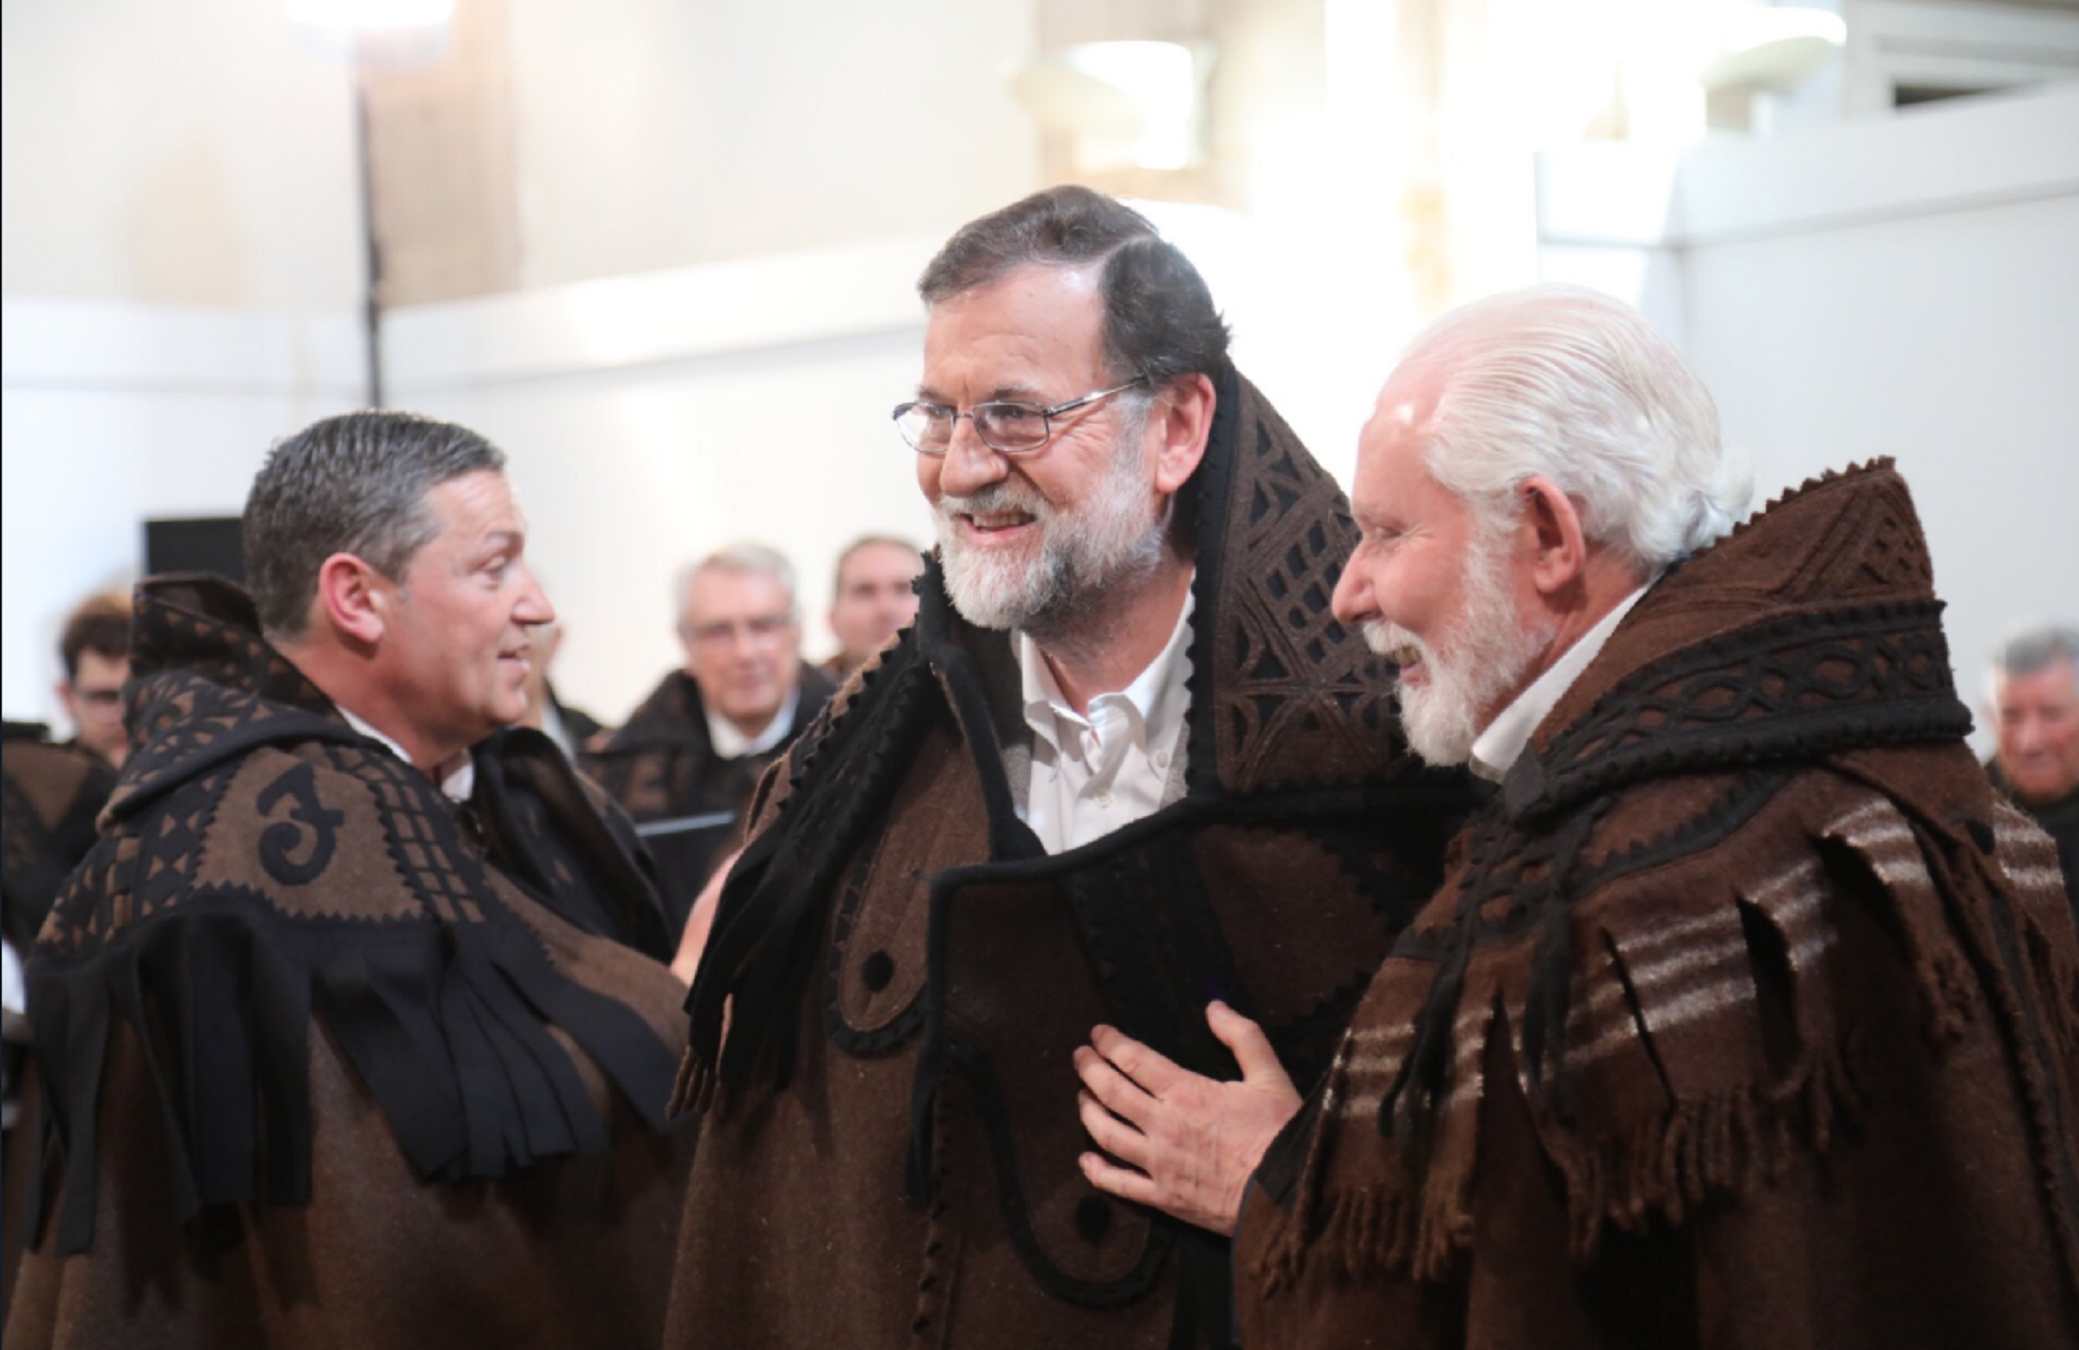 Rajoy es posa capa i Rufián rep per comparar-lo amb el dolent de Harry Potter